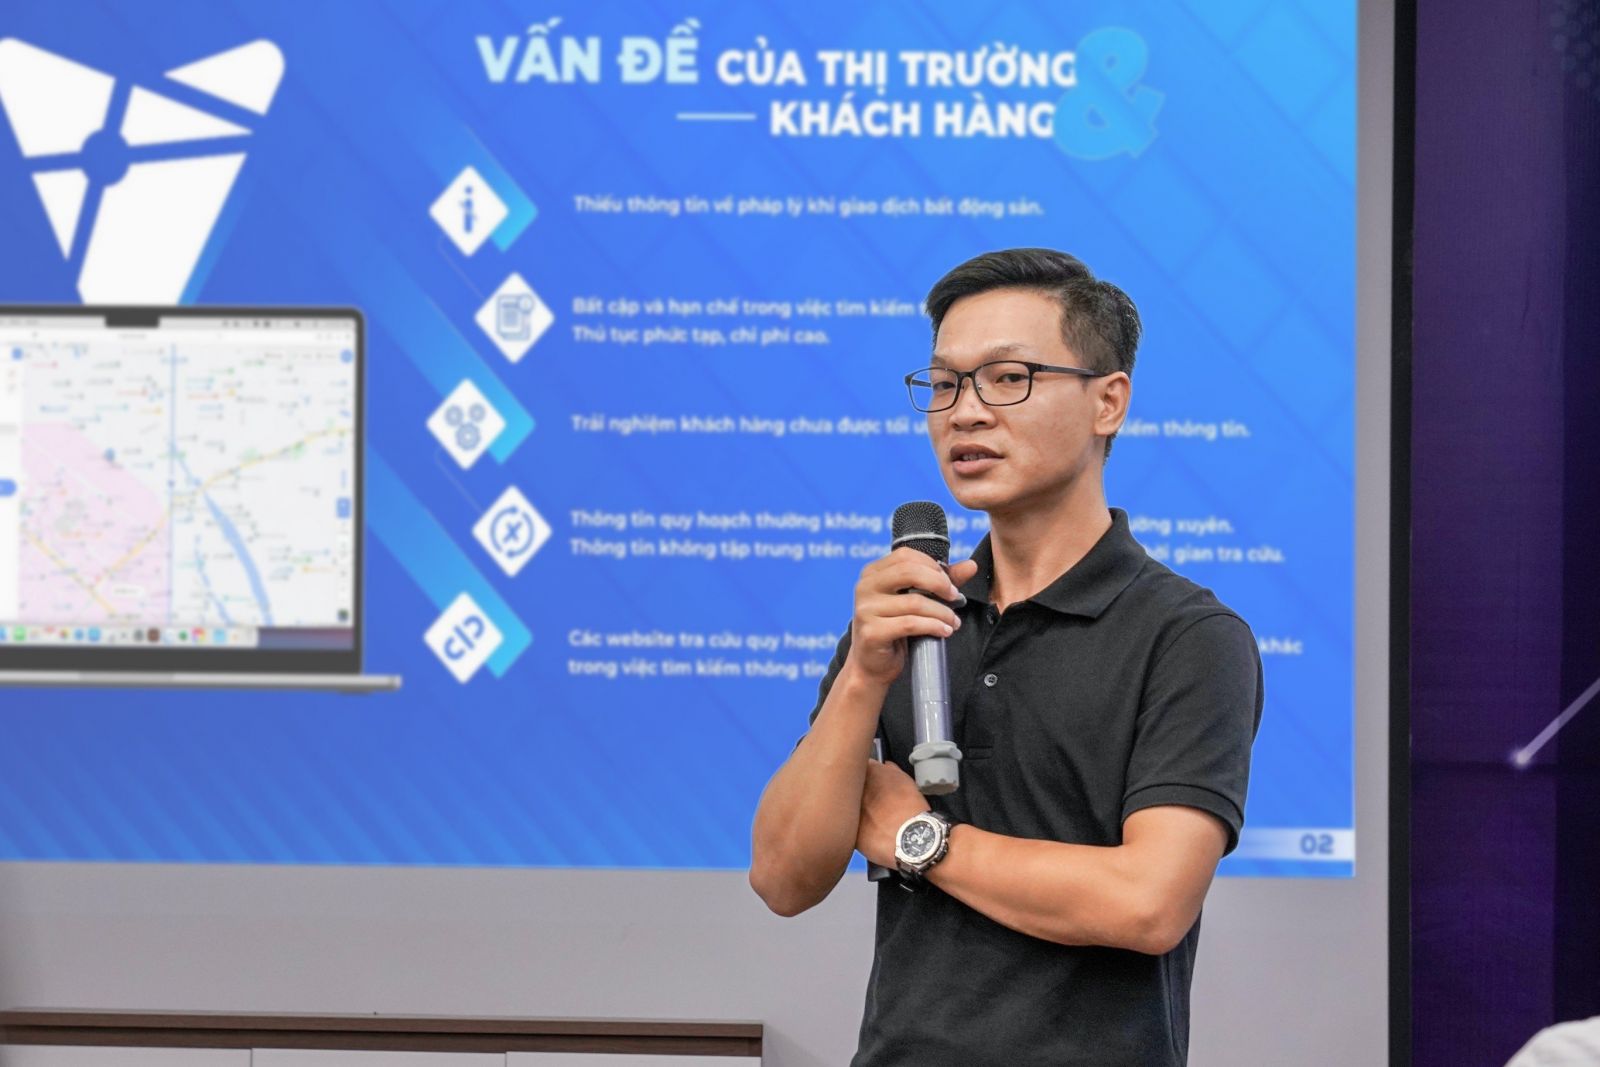 Ông Nguyễn Duy Sơn – Giám đốc Trung tâm Phát triển Hệ thống Thông tin địa lý của Meey Land chia sẻ kỳ vọng về sản phẩm Meey Map trong tương lai.